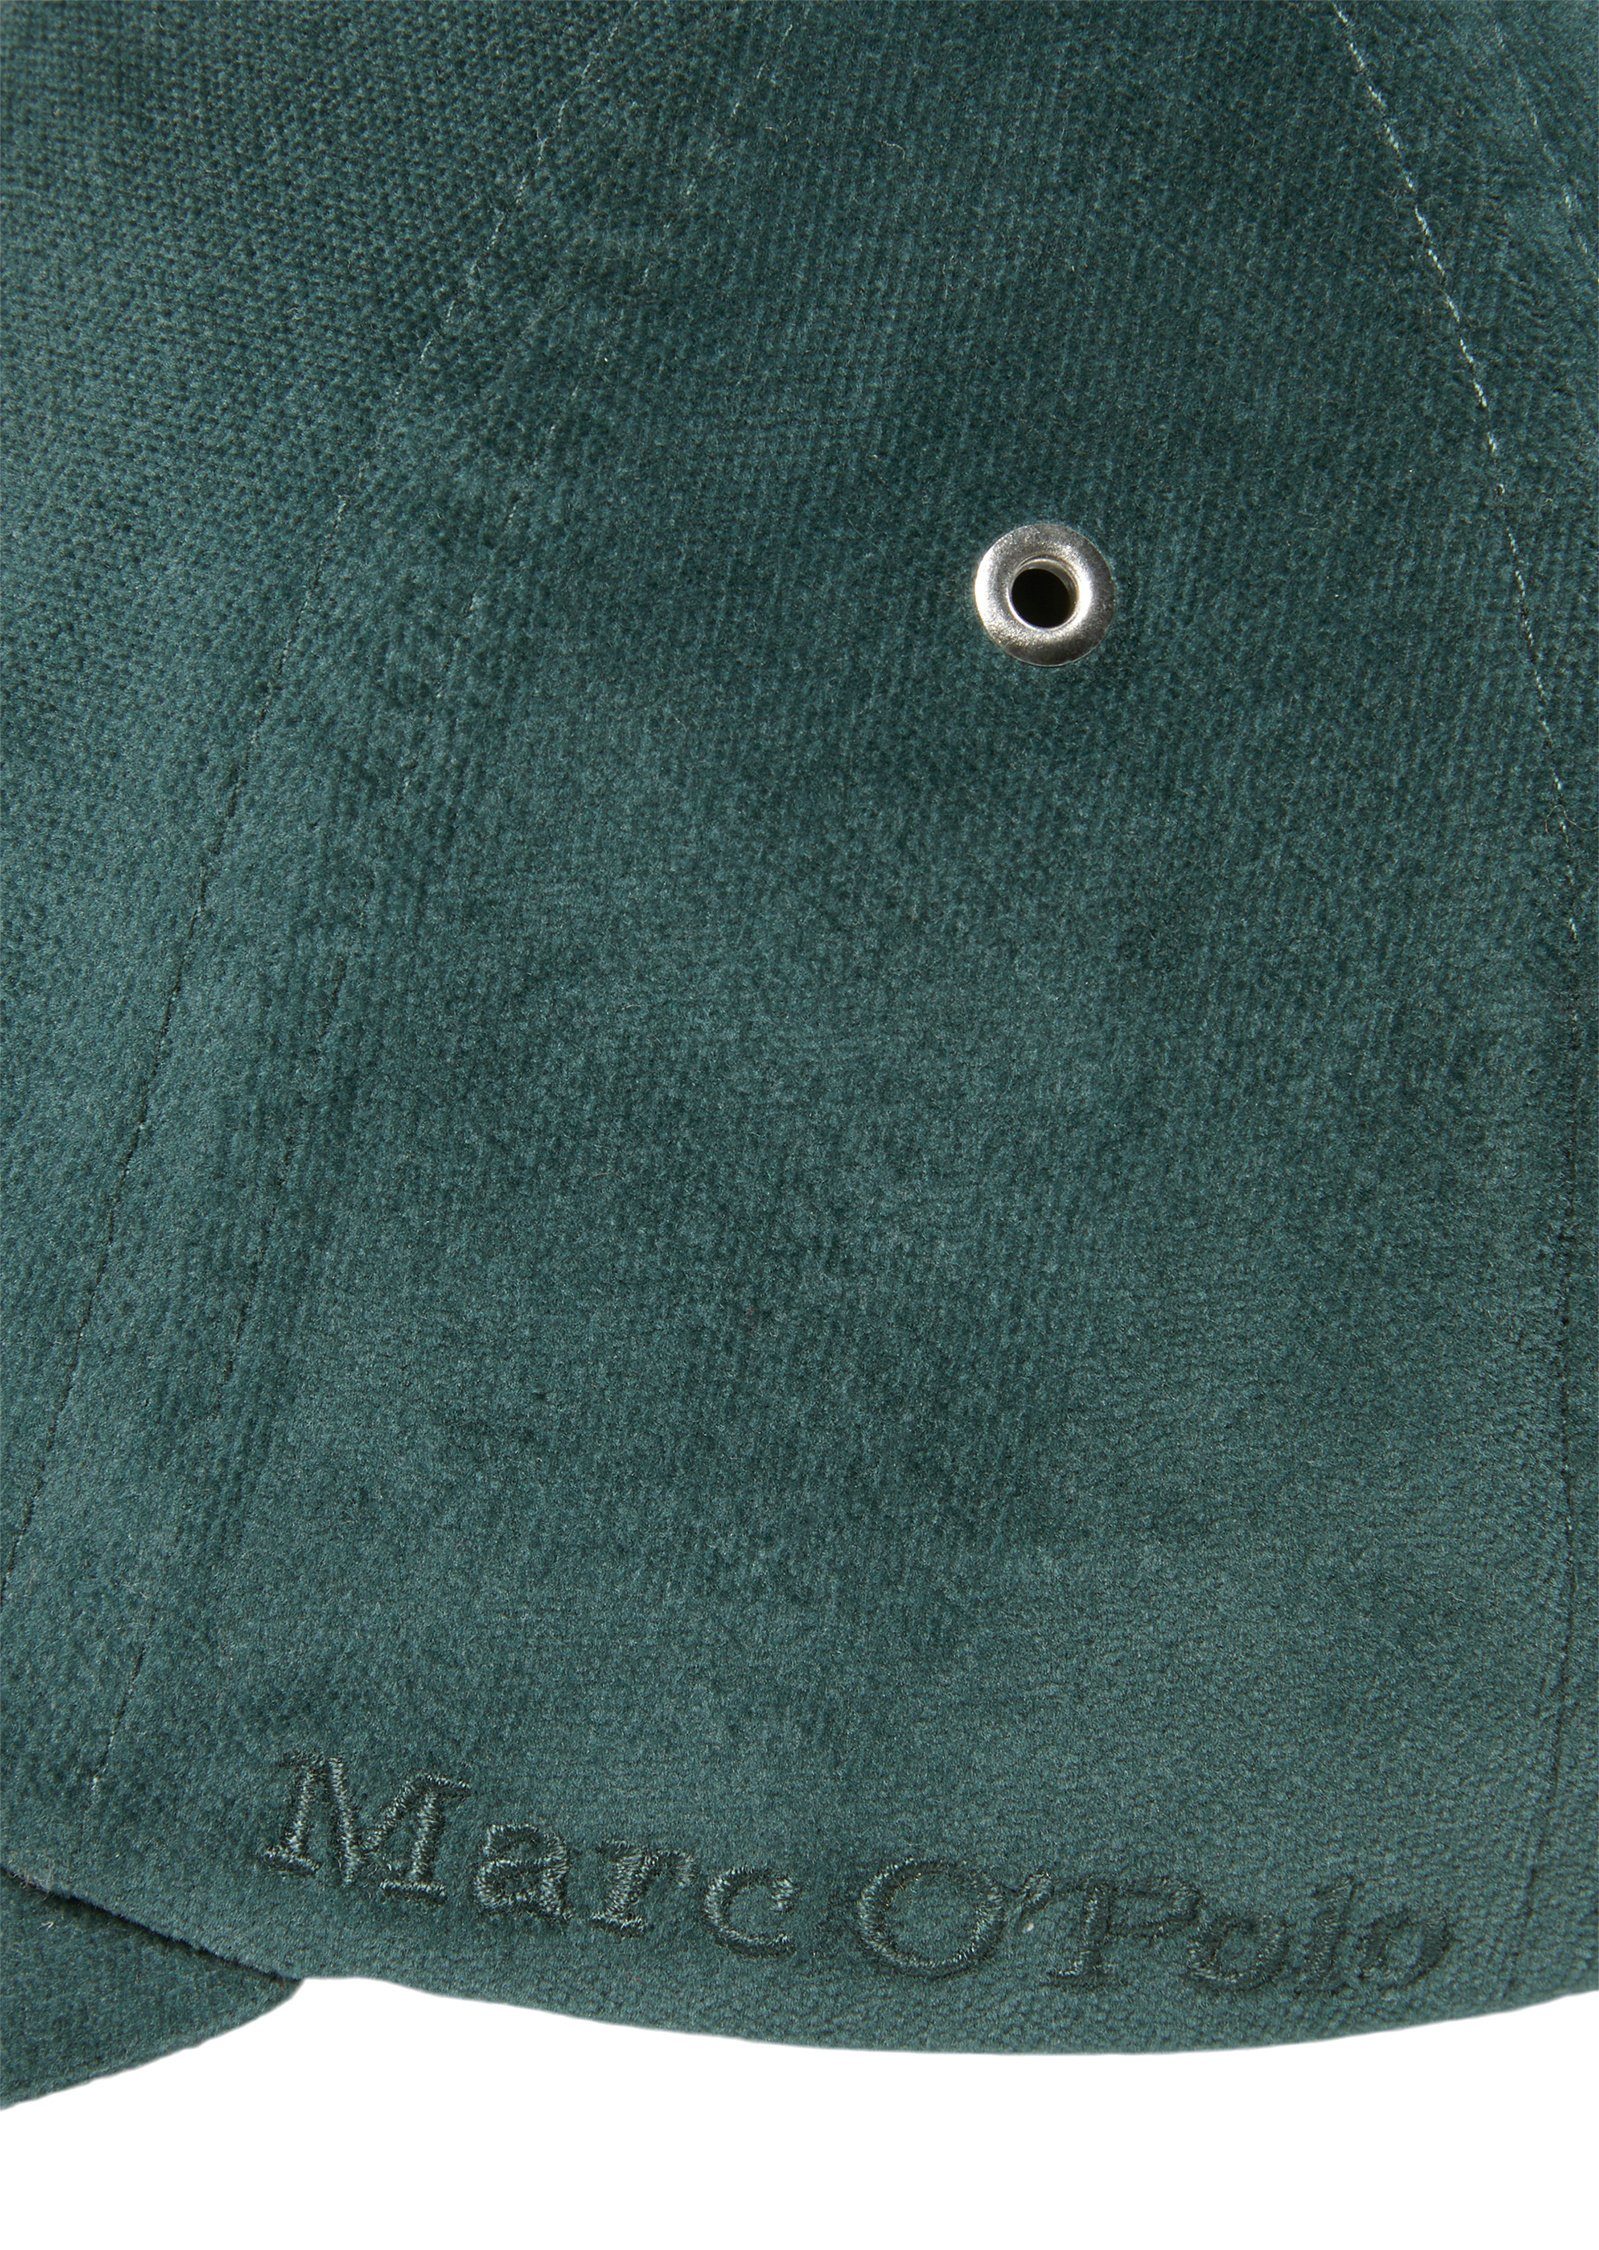 O'Polo grün Marc aus Baseball Cap Organic-Cotton-Lyocell-Mix